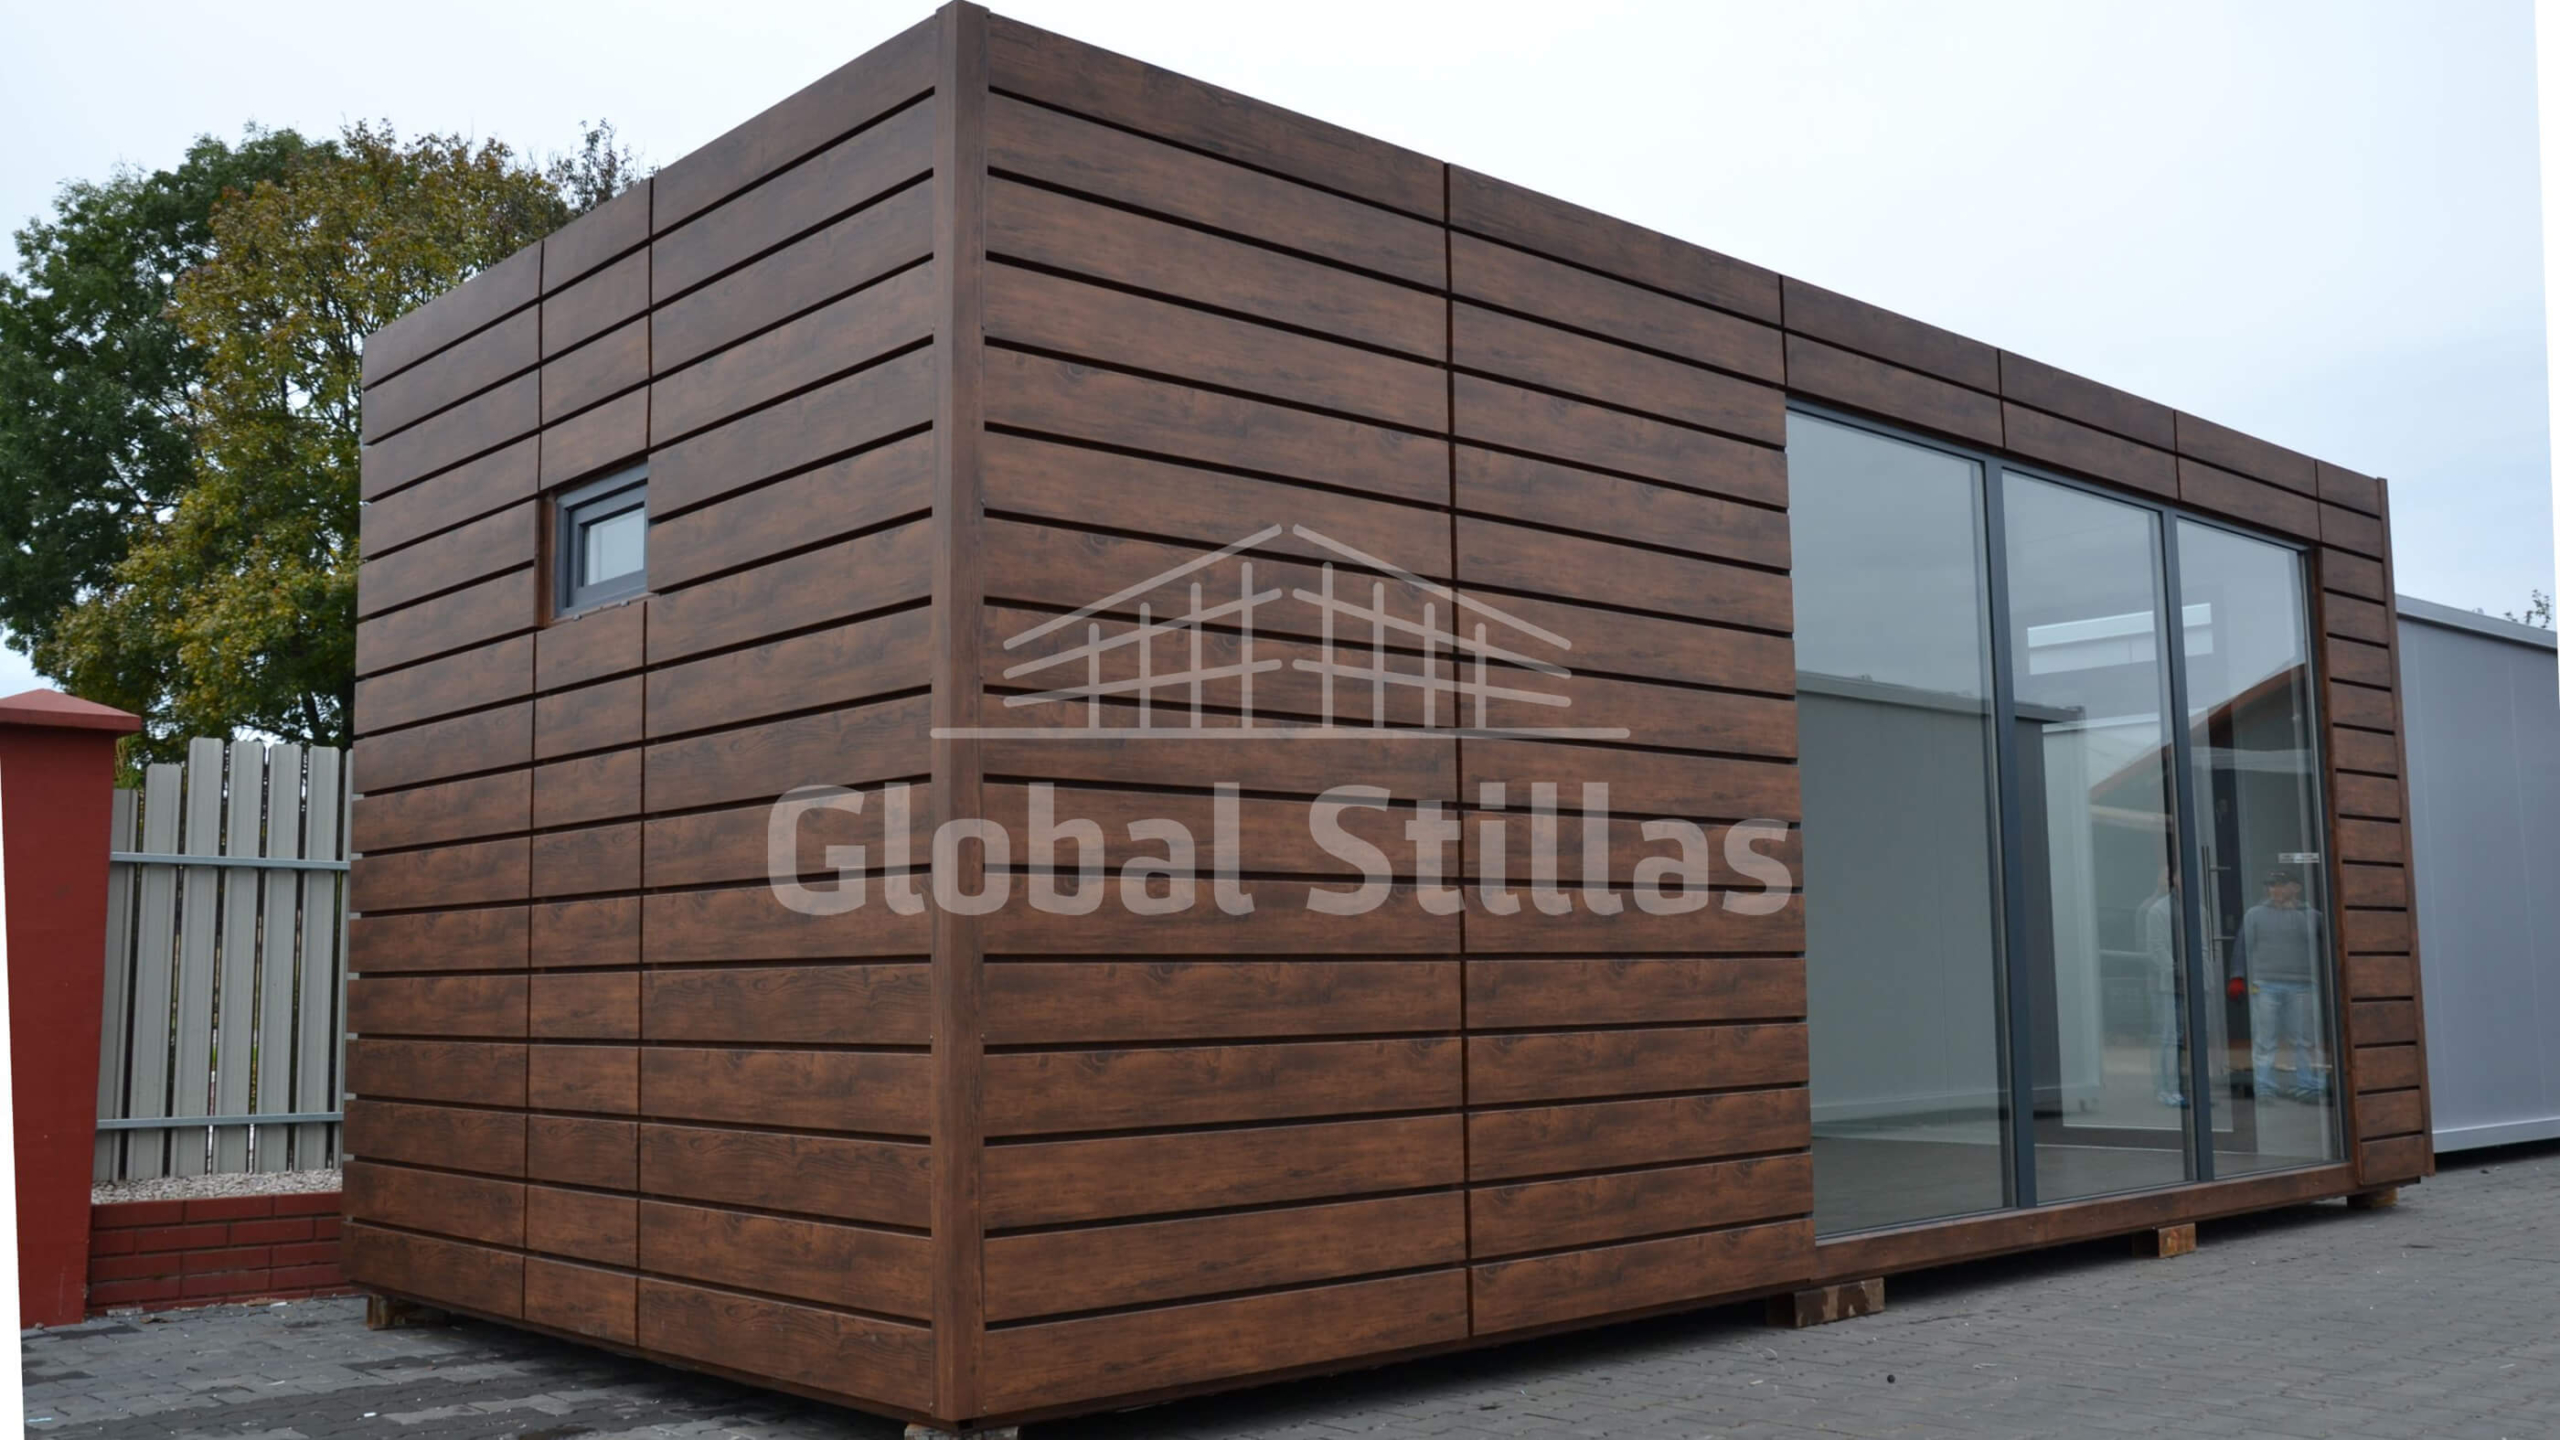 1592 Sperrebotn - GlobalStillas.no - Stillas til salg og leie! Vi er et profesjonelt stillasfirma som tilbyr stillastjenester for private kunder og byggefirmaer.